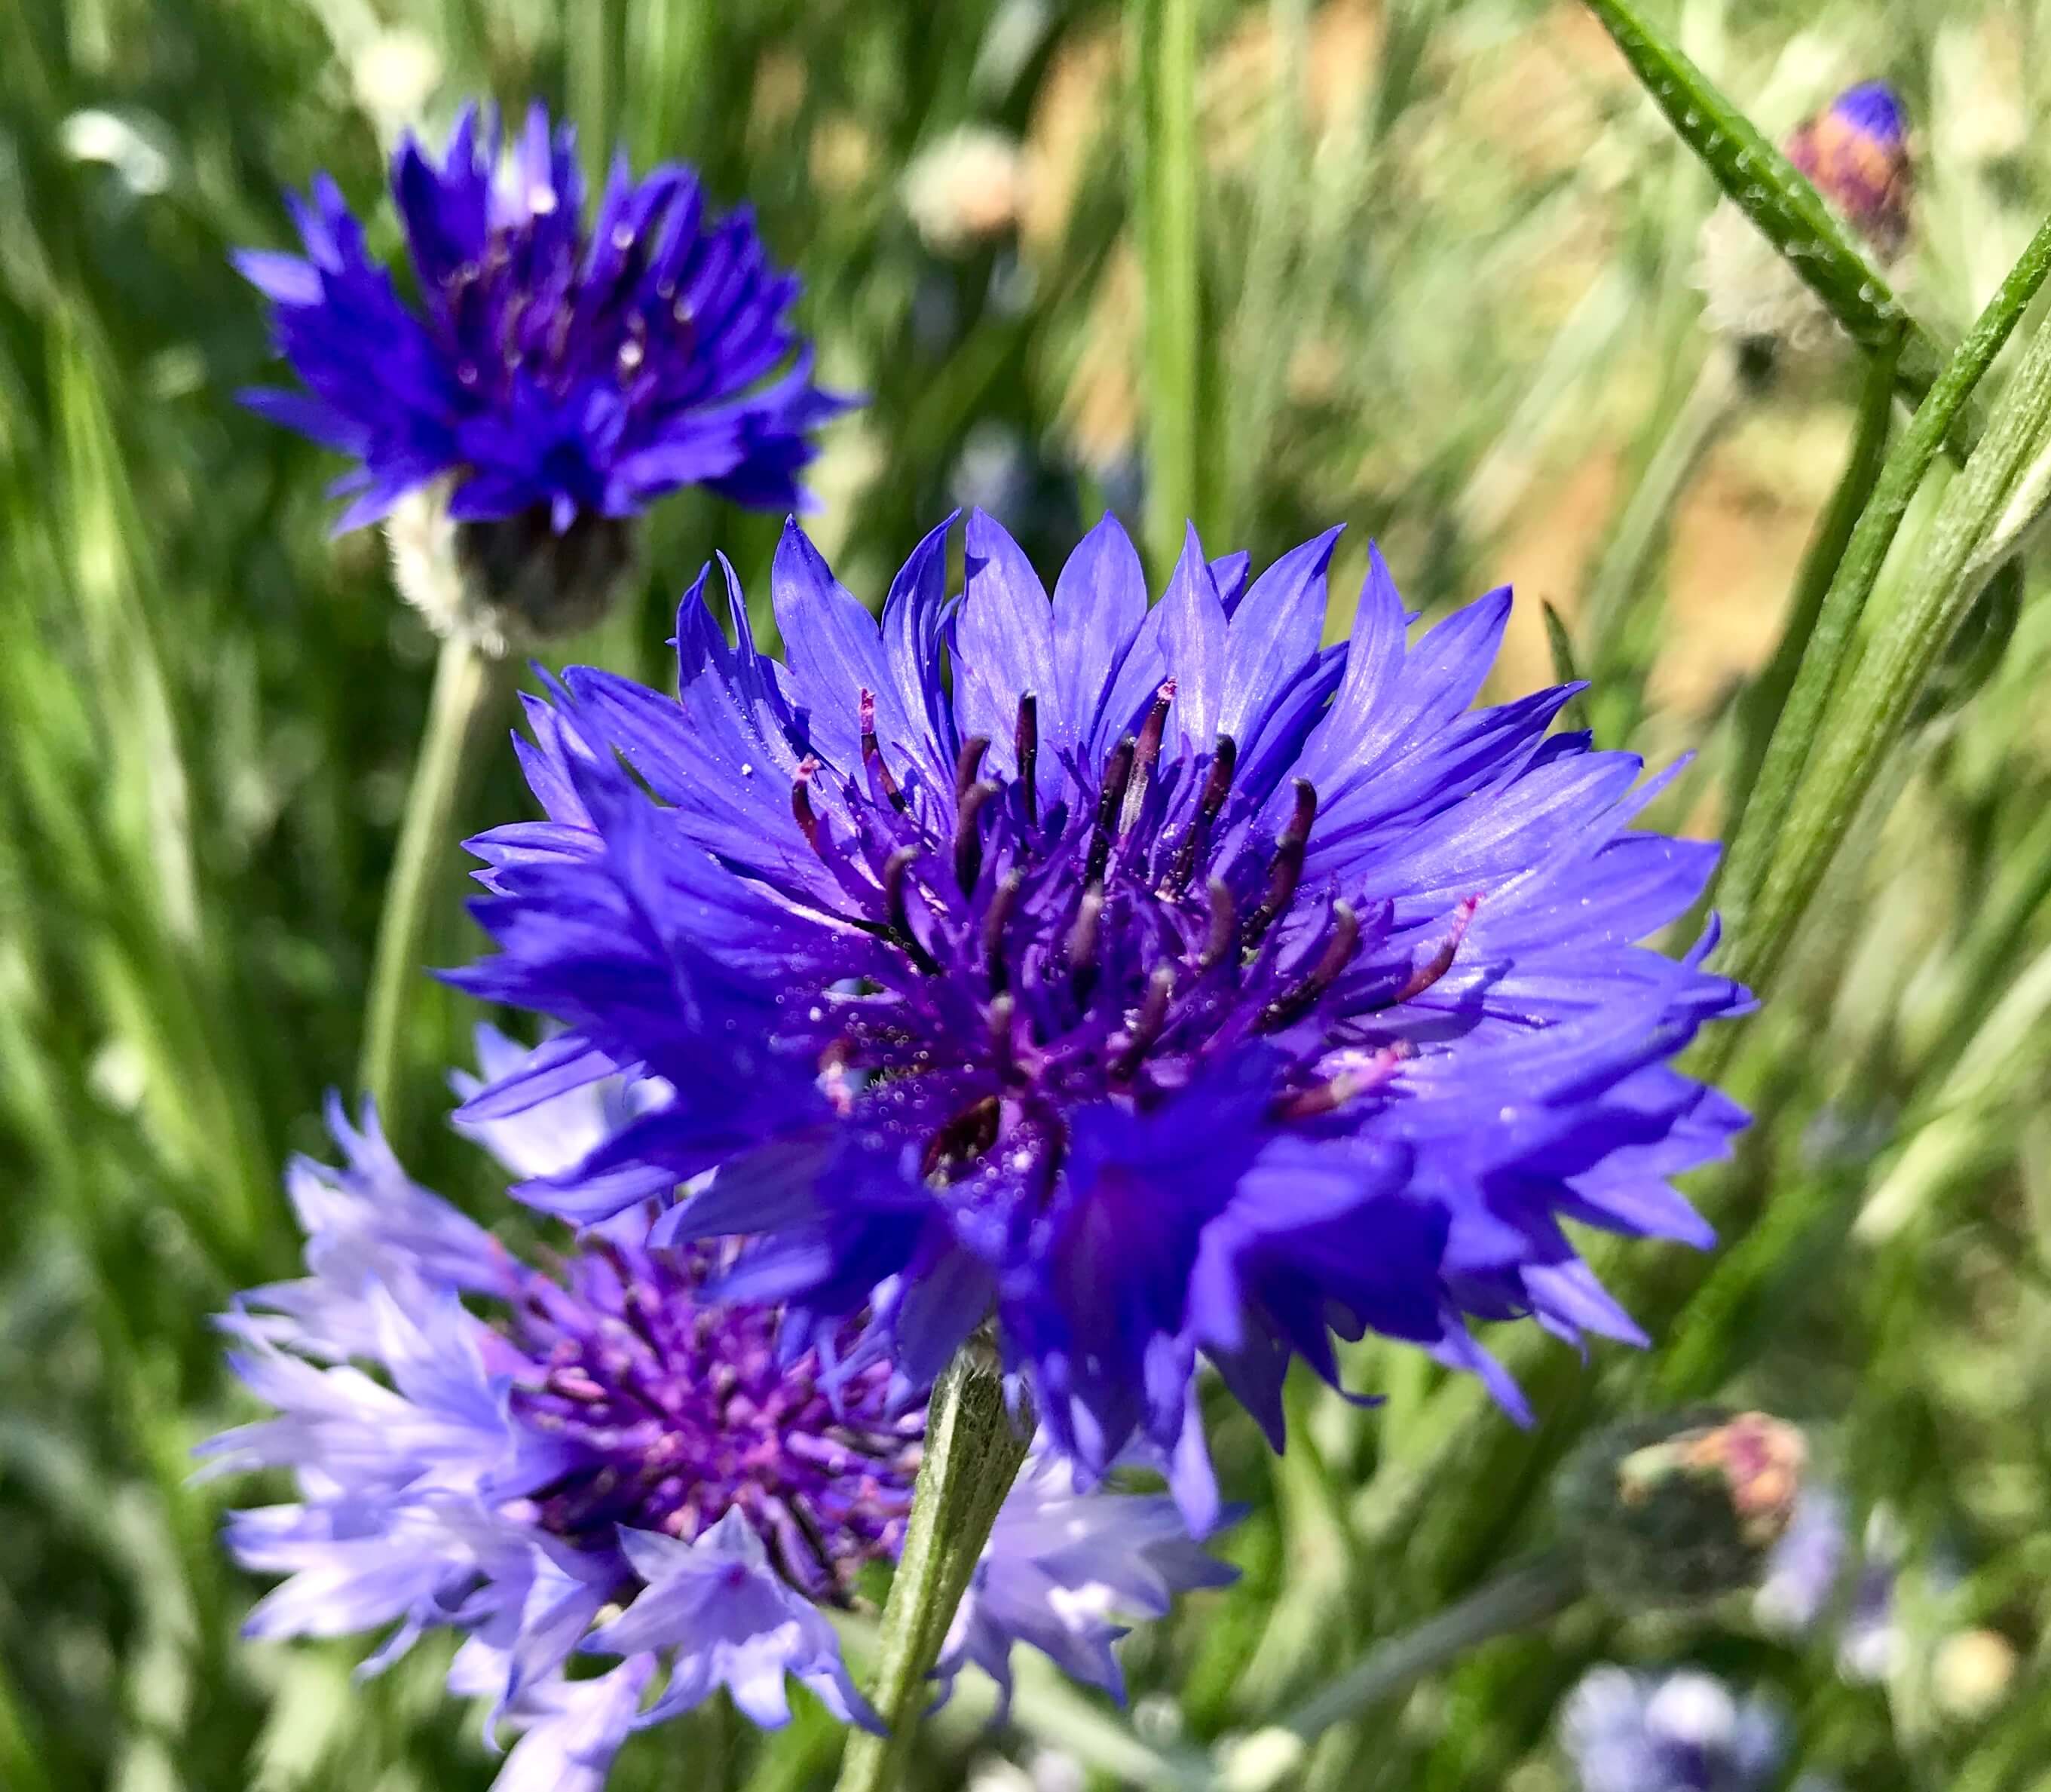 端午の節句を知らせる 矢車菊 ヤグルマギク の深く青い花 花言葉 教育 とドイツの国花 カイゼル 皇帝 の花 のお話 ぼちぼち歩く